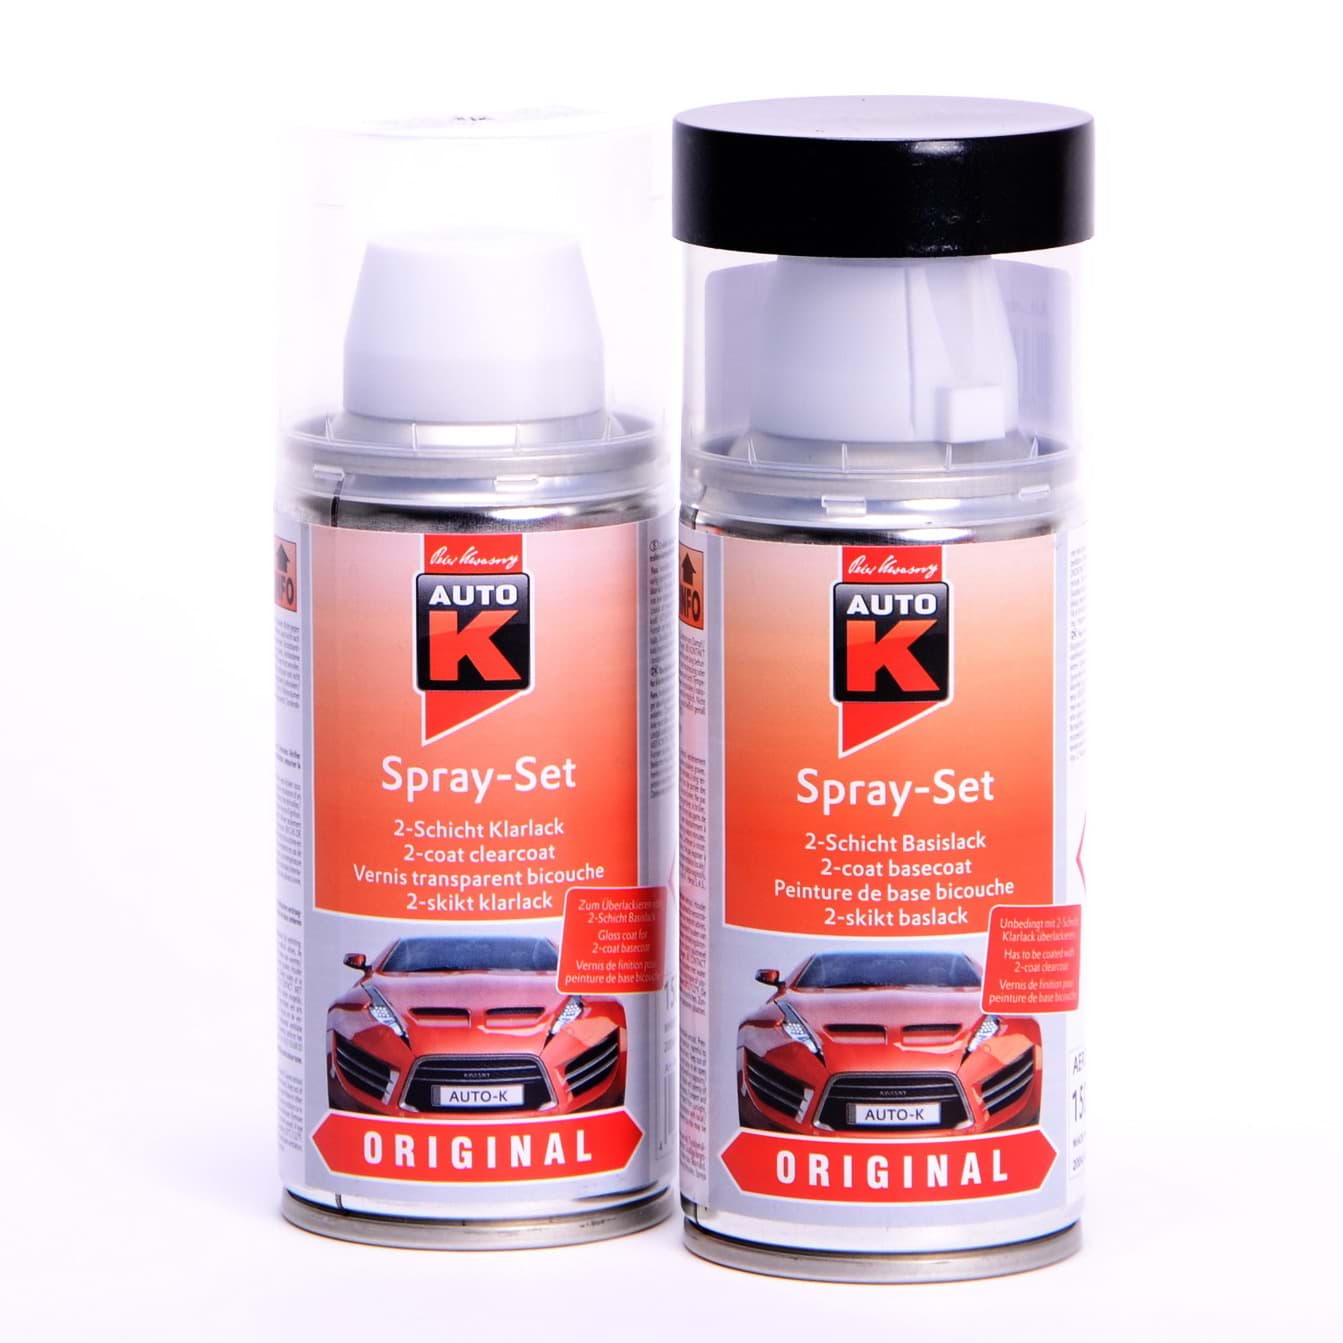 Afbeelding van Auto-K Spray-Set Autolack für Peugeot KKN Rouge Aden 42361